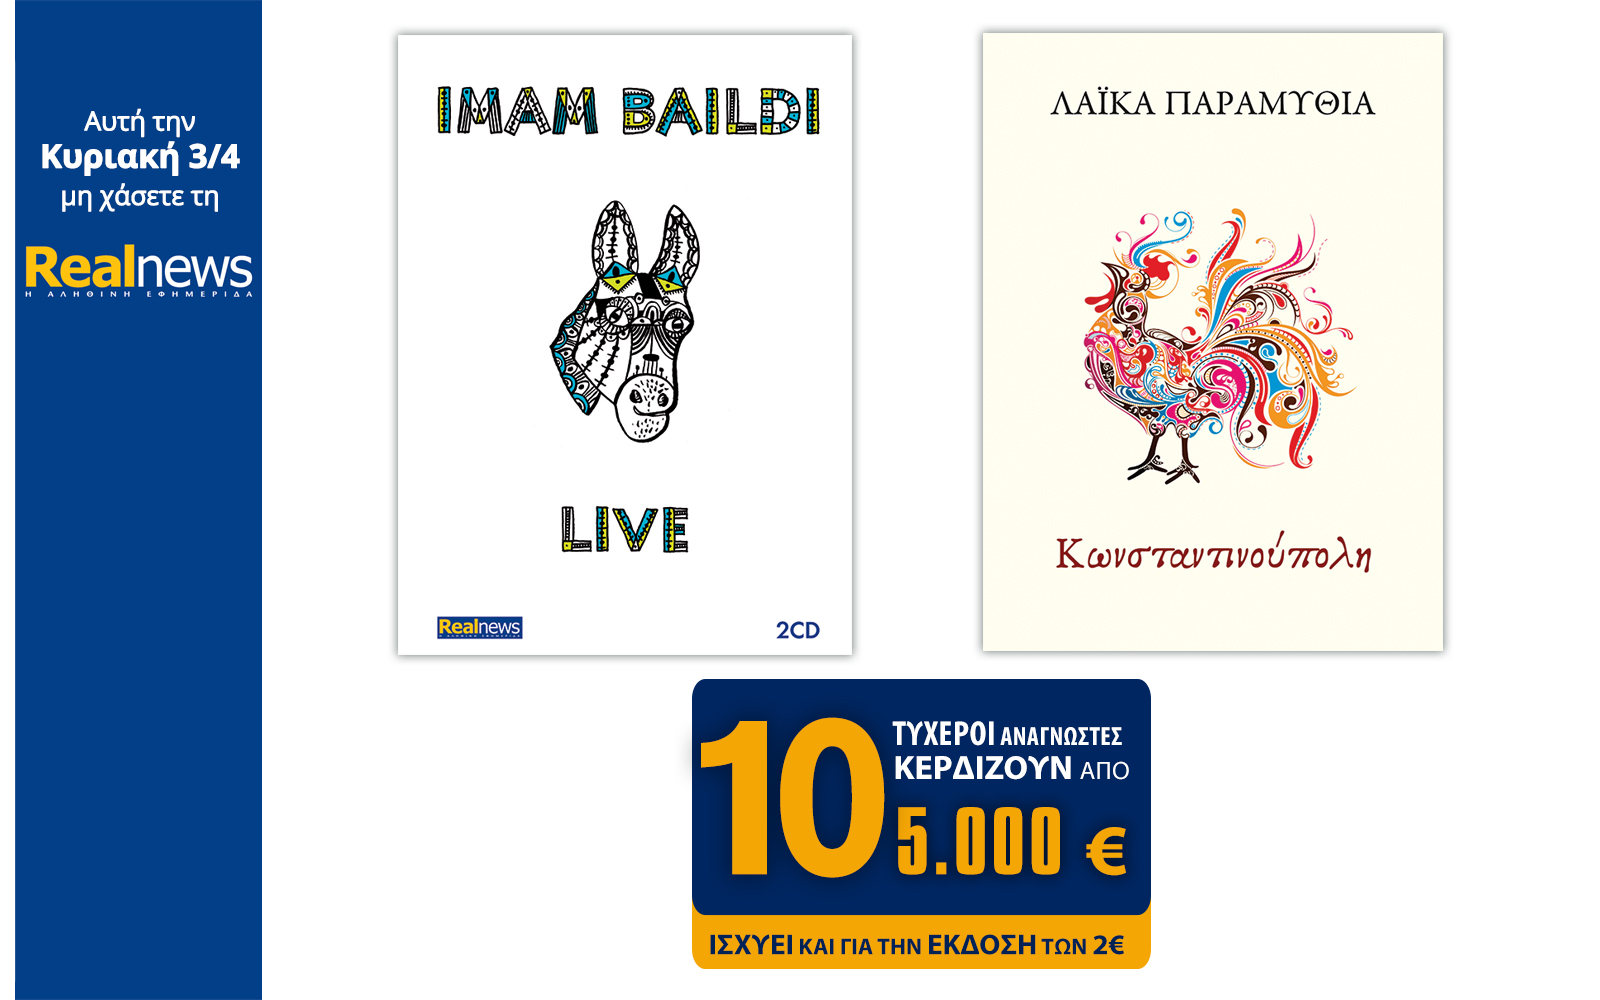 Σήμερα στη Realnews: Imam Baildi 2 CD, Τα Λαϊκά Παραμύθια της Κωνσταντινούπολης & 10×5.000€